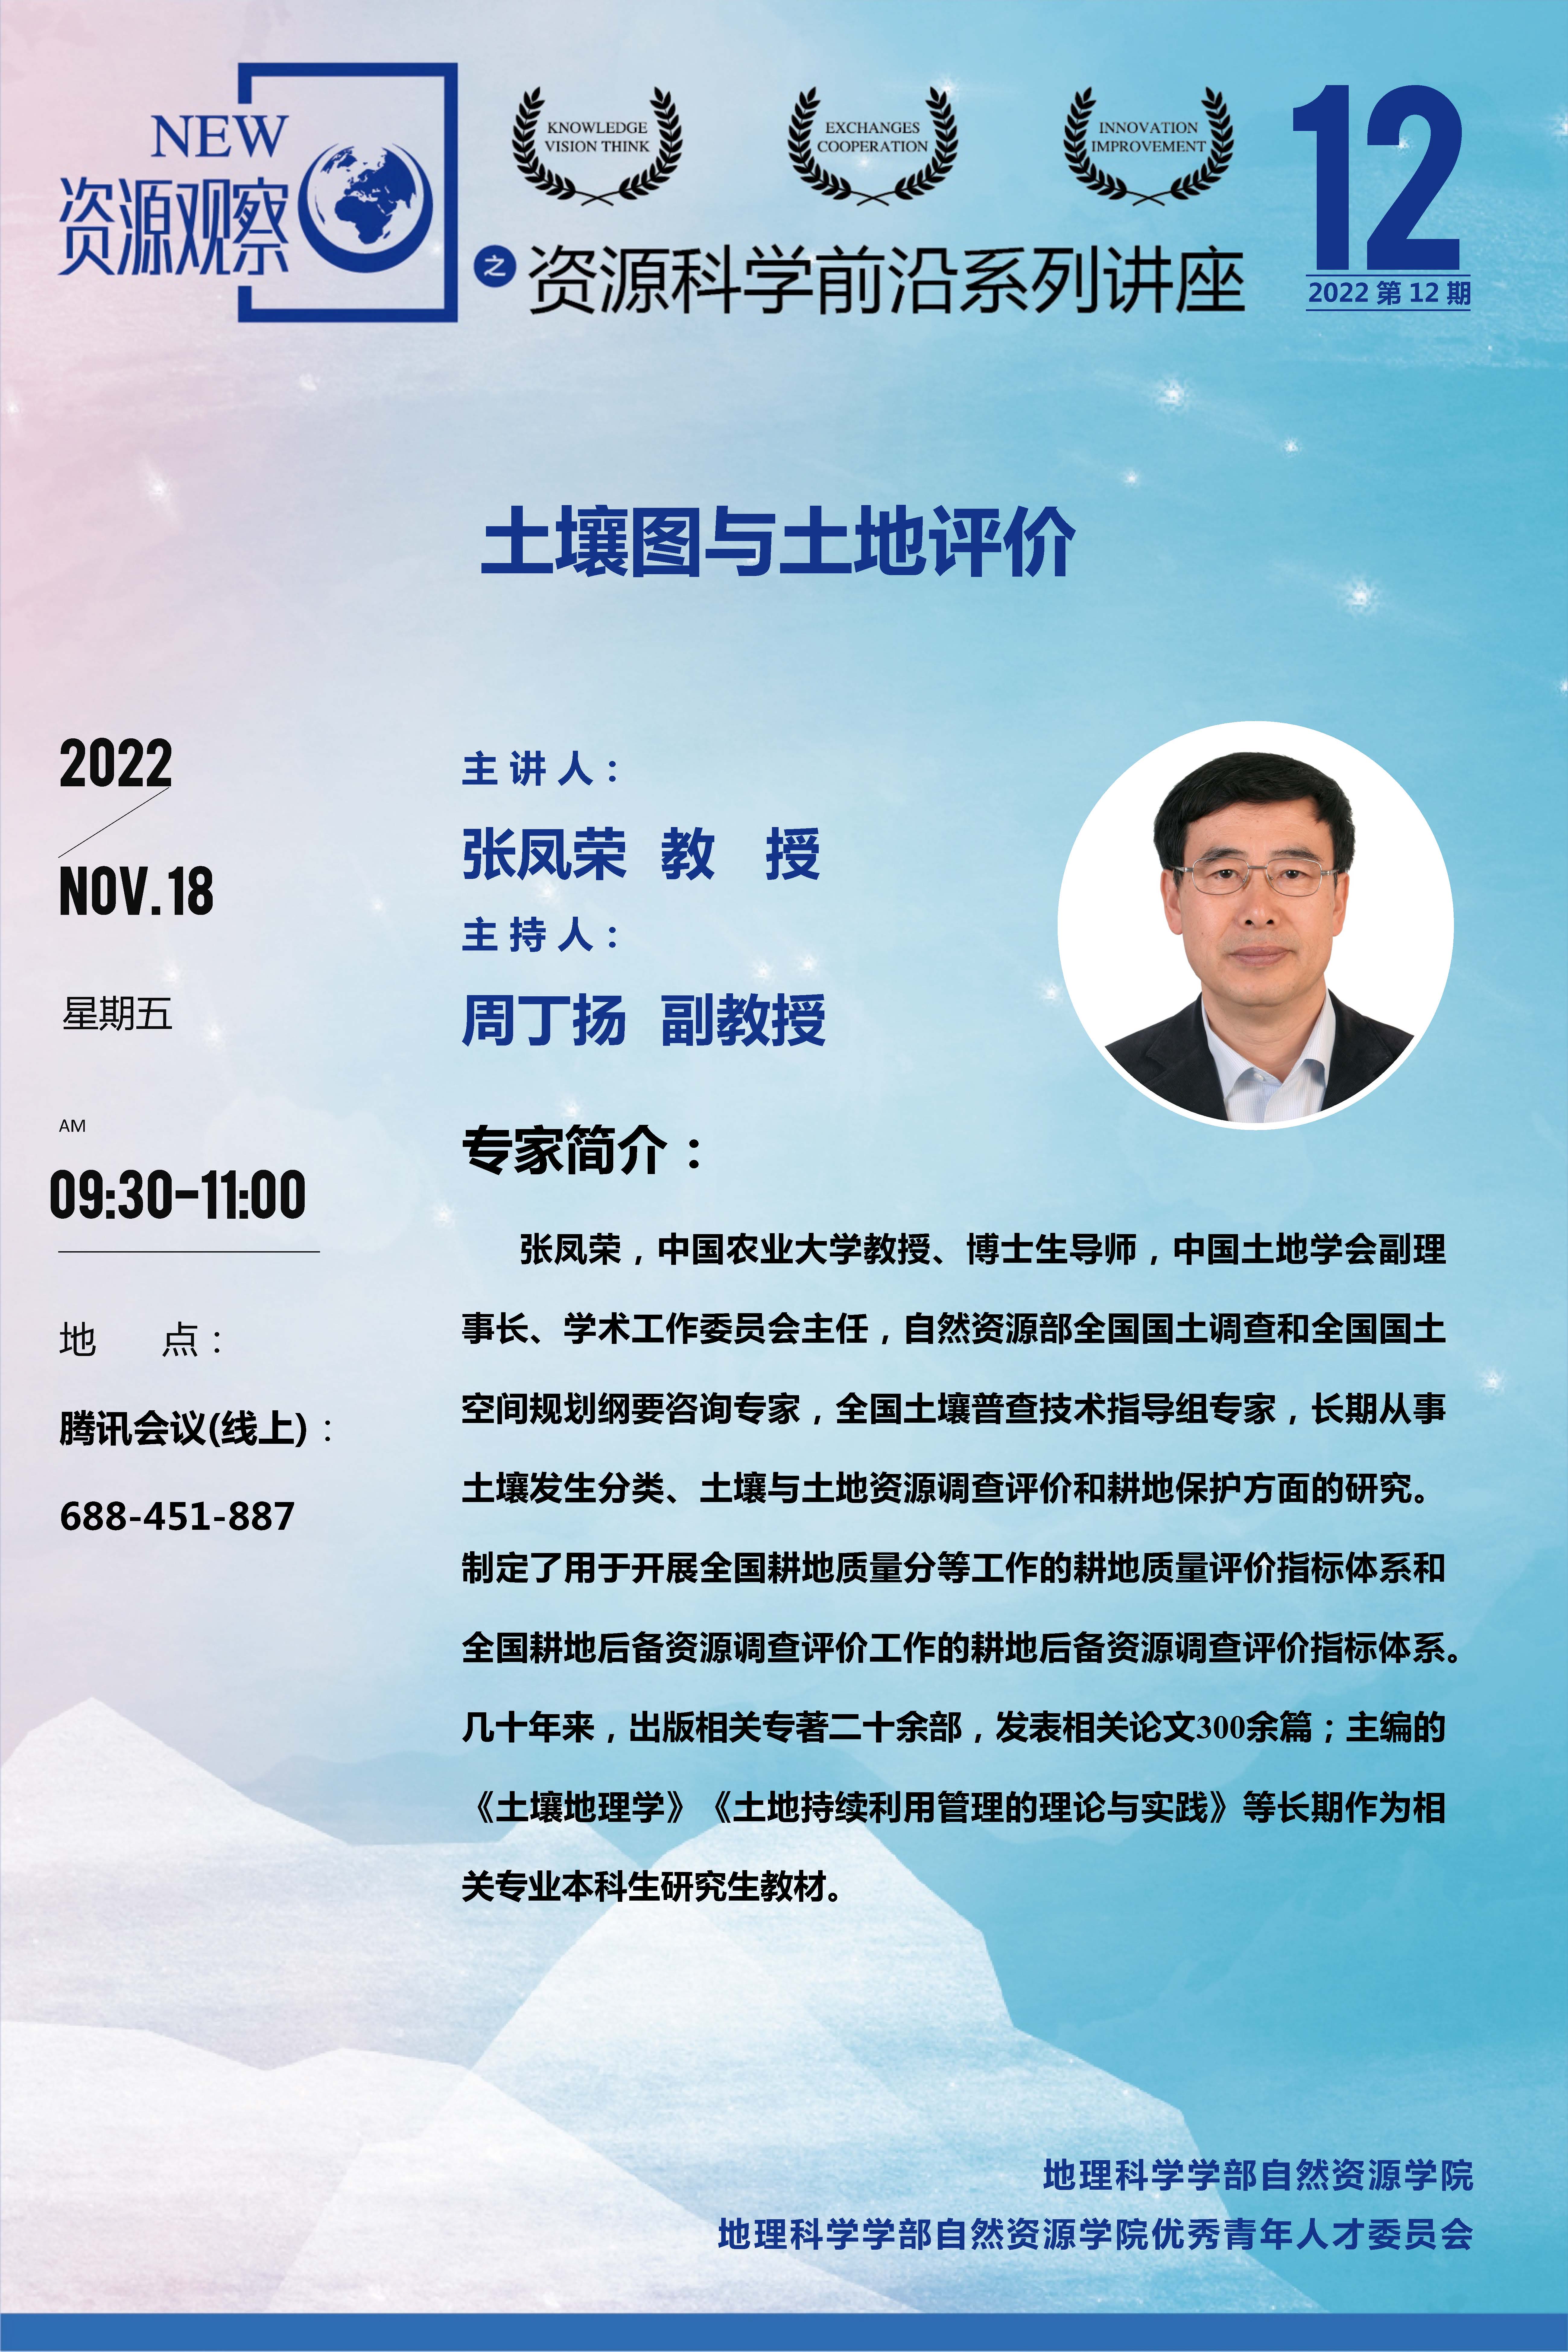 资源科学前沿系列讲座2022年第12期-张凤荣教授..jpg